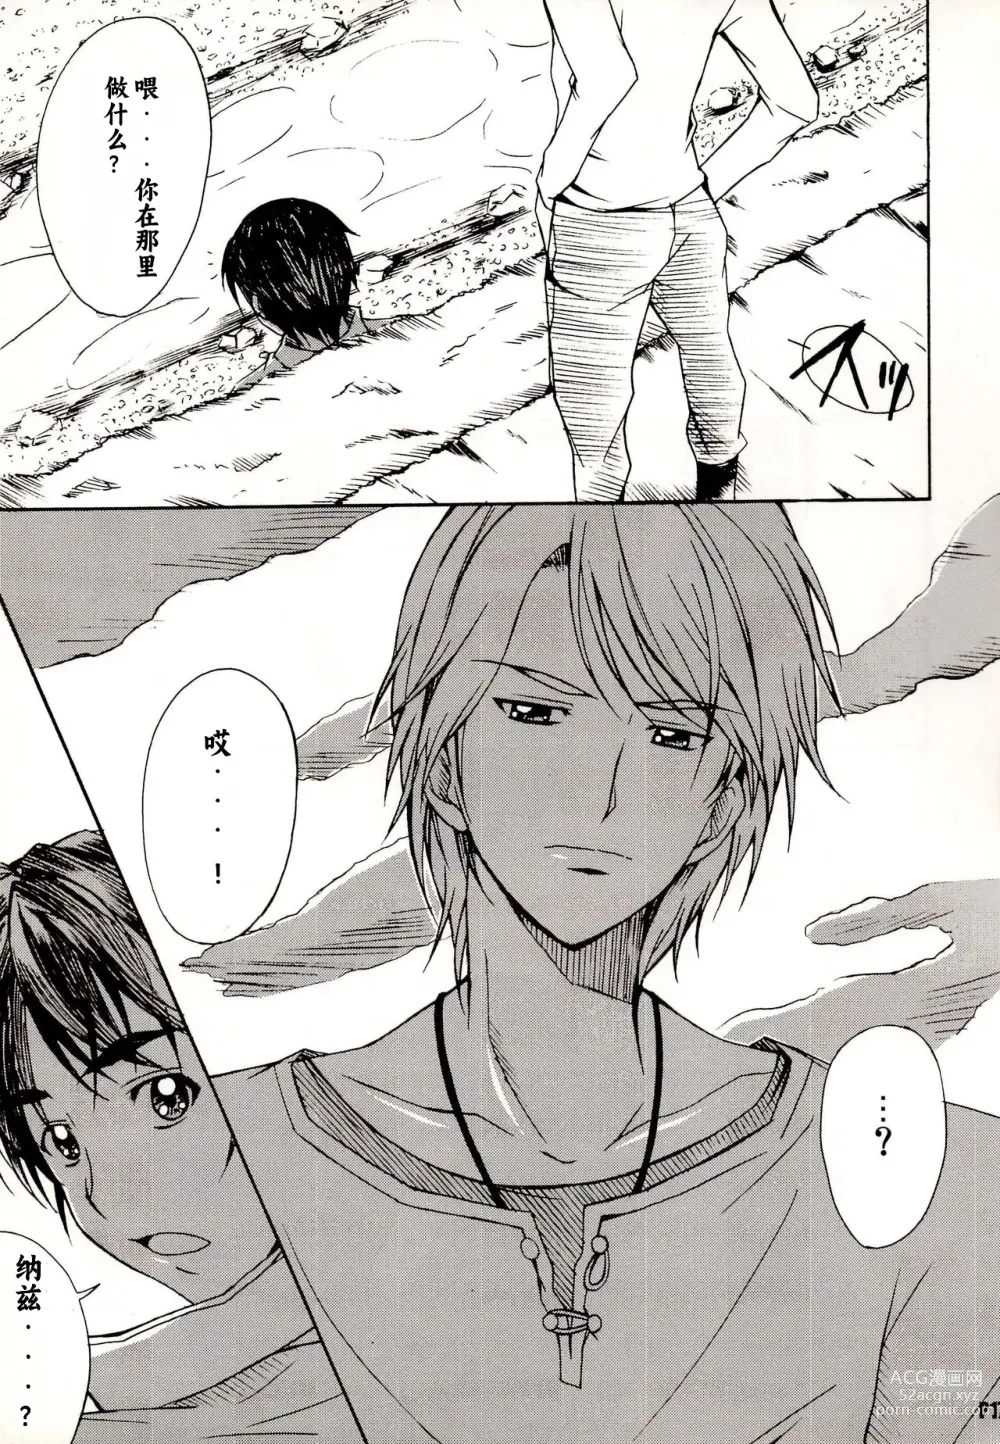 Page 17 of doujinshi Otonanopuri 5